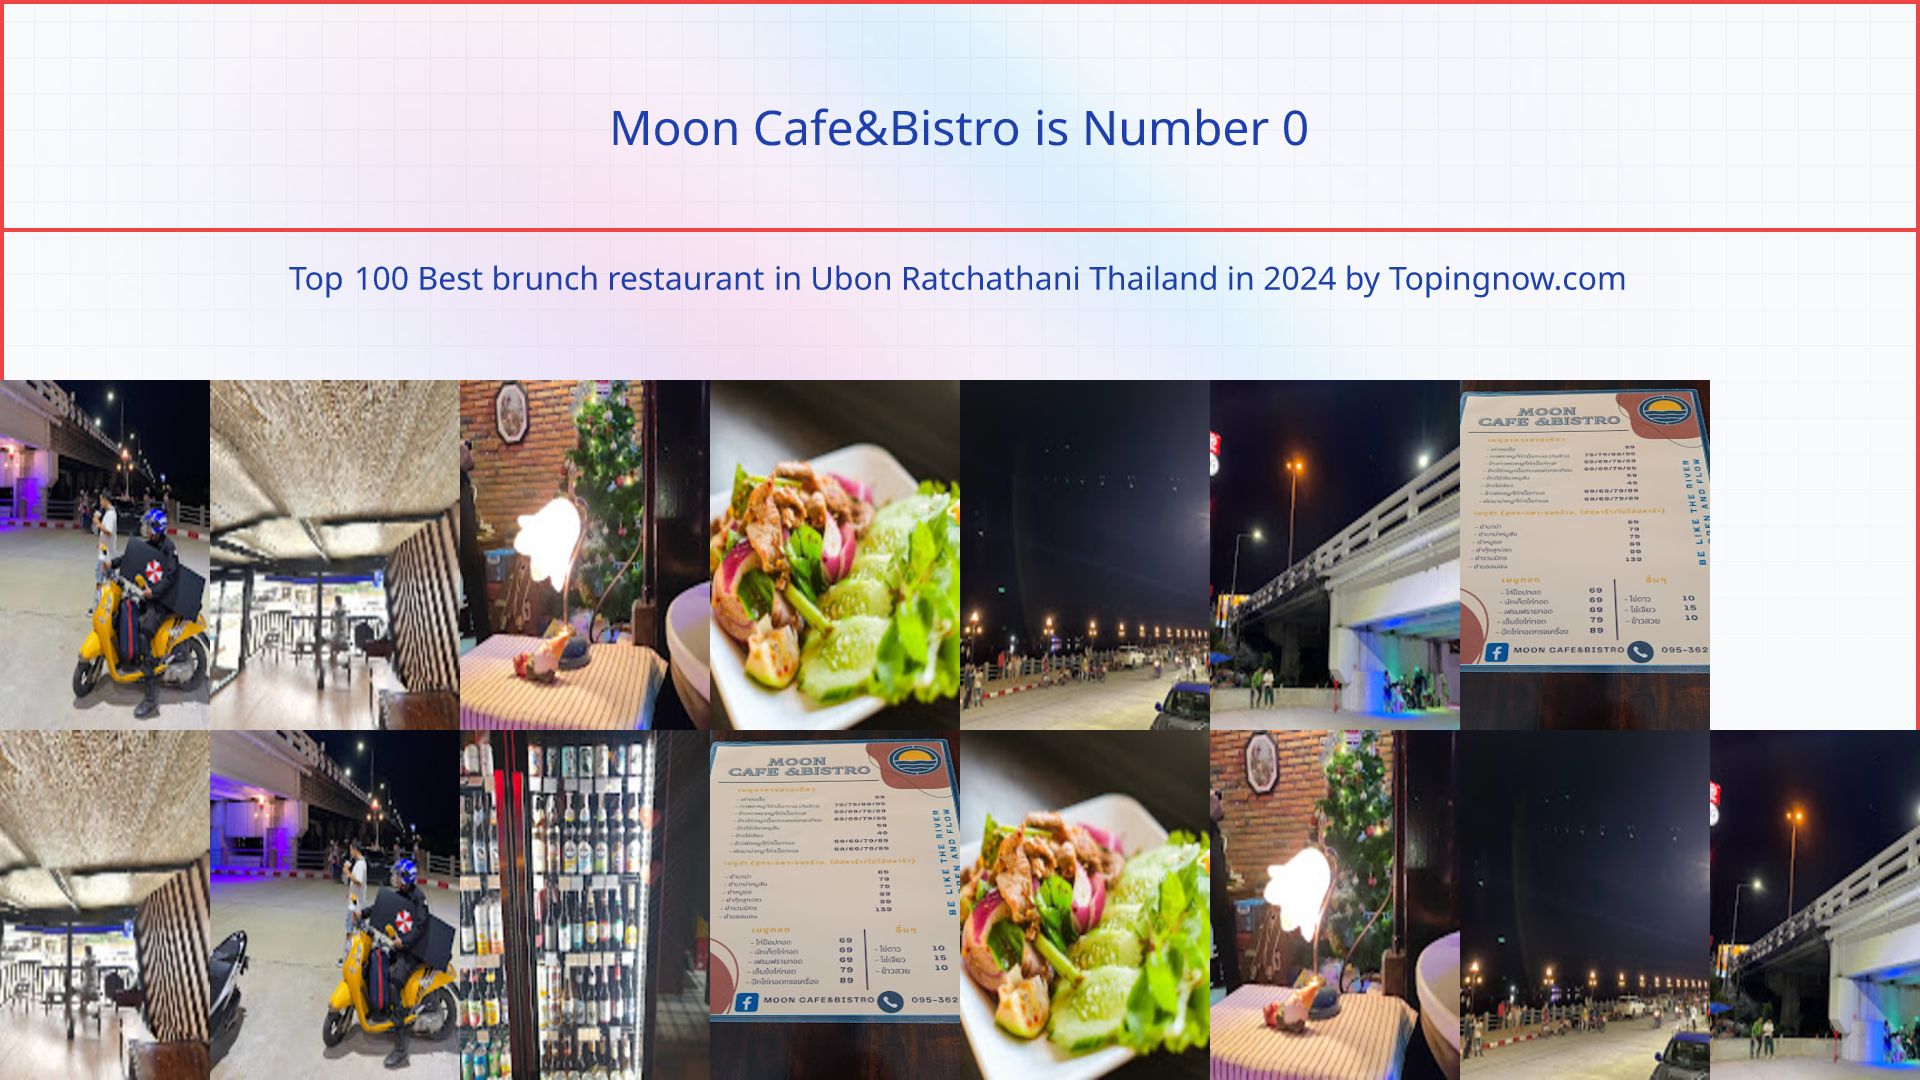 Moon Cafe&Bistro: Top 100 Best brunch restaurant in Ubon Ratchathani Thailand in 2024